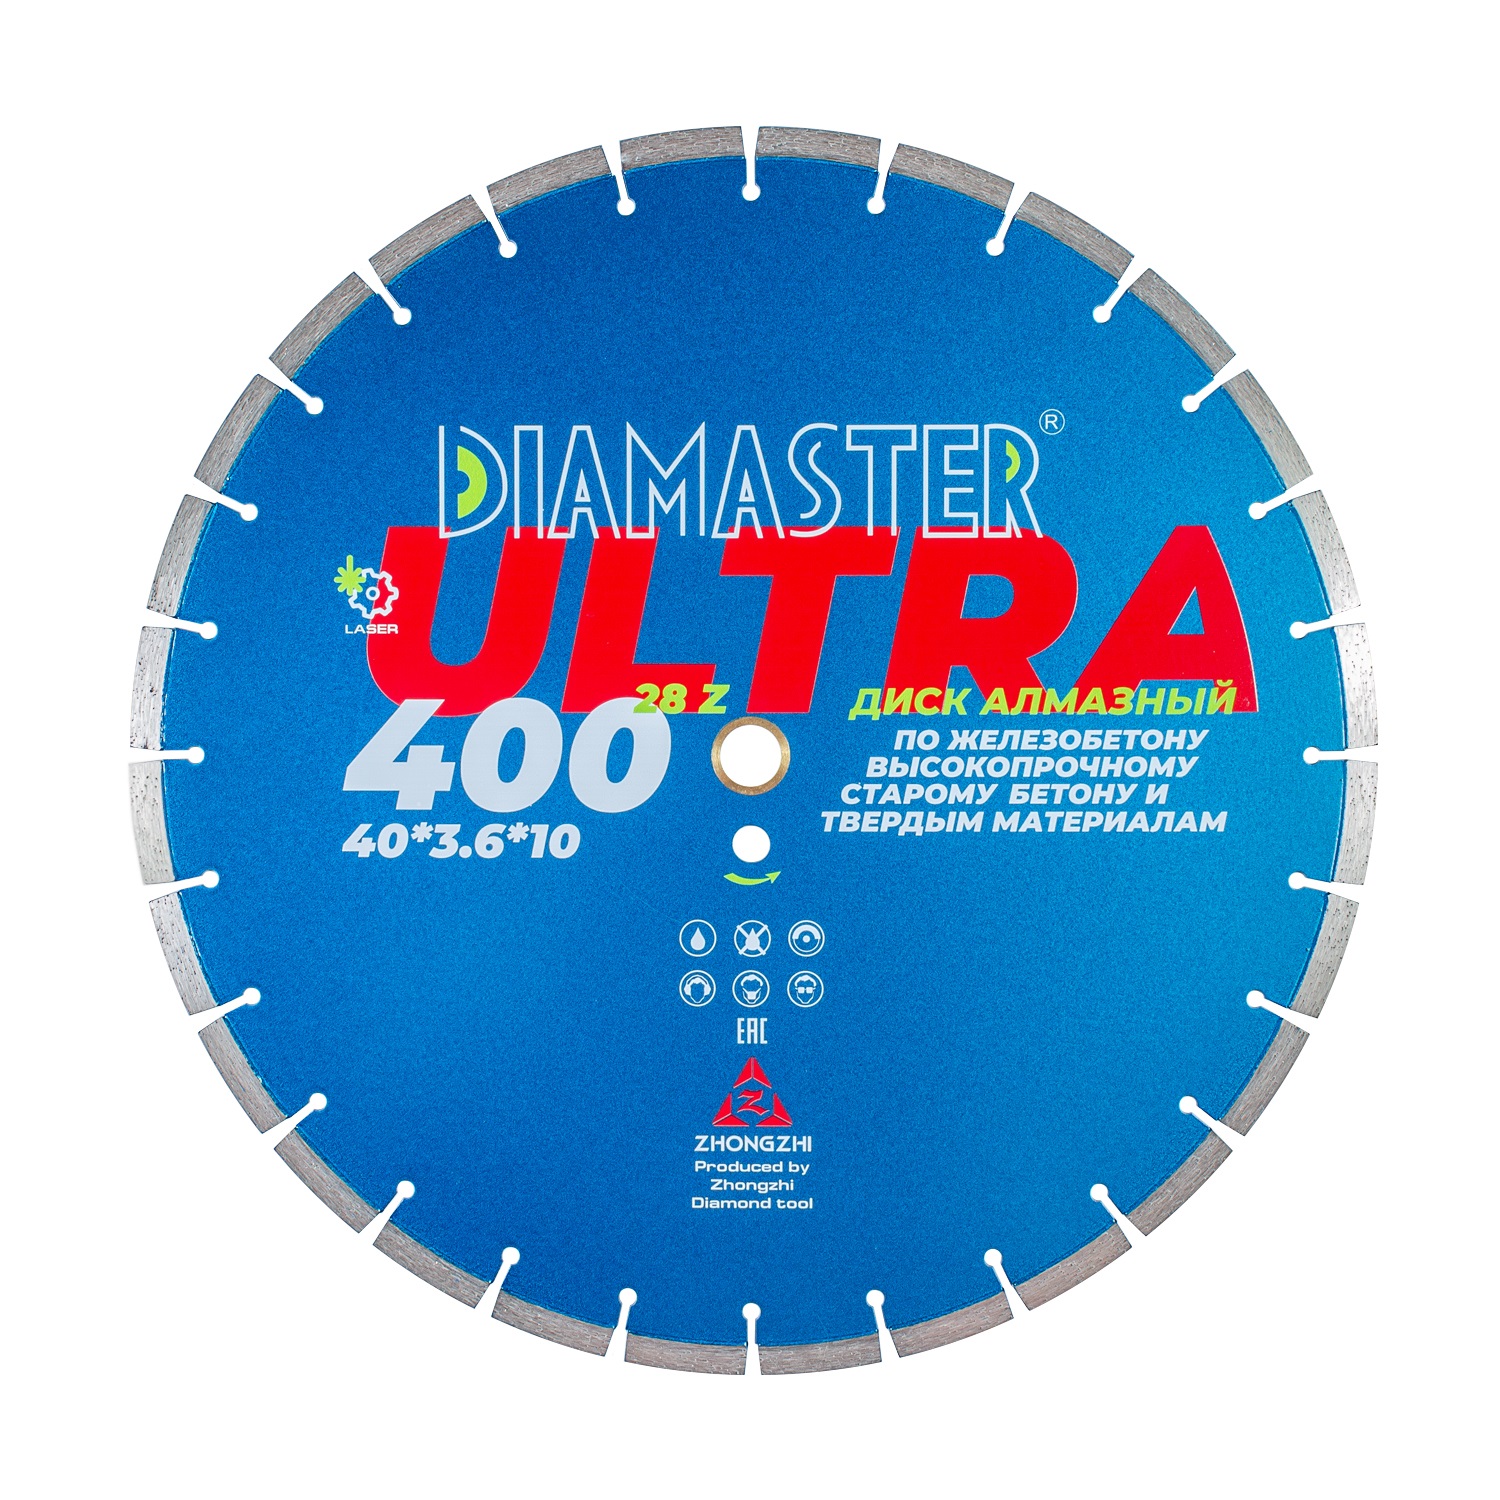 Диск сегментный Laser ULTRA д.400*2,6*25,4 (40*3,6*10)мм | 28z/железобетон/wet/dry DIAMASTER диск сегментный gold д 400 25 4 20 0 40 3 0 10 мм 28z асфальт wet diamaster